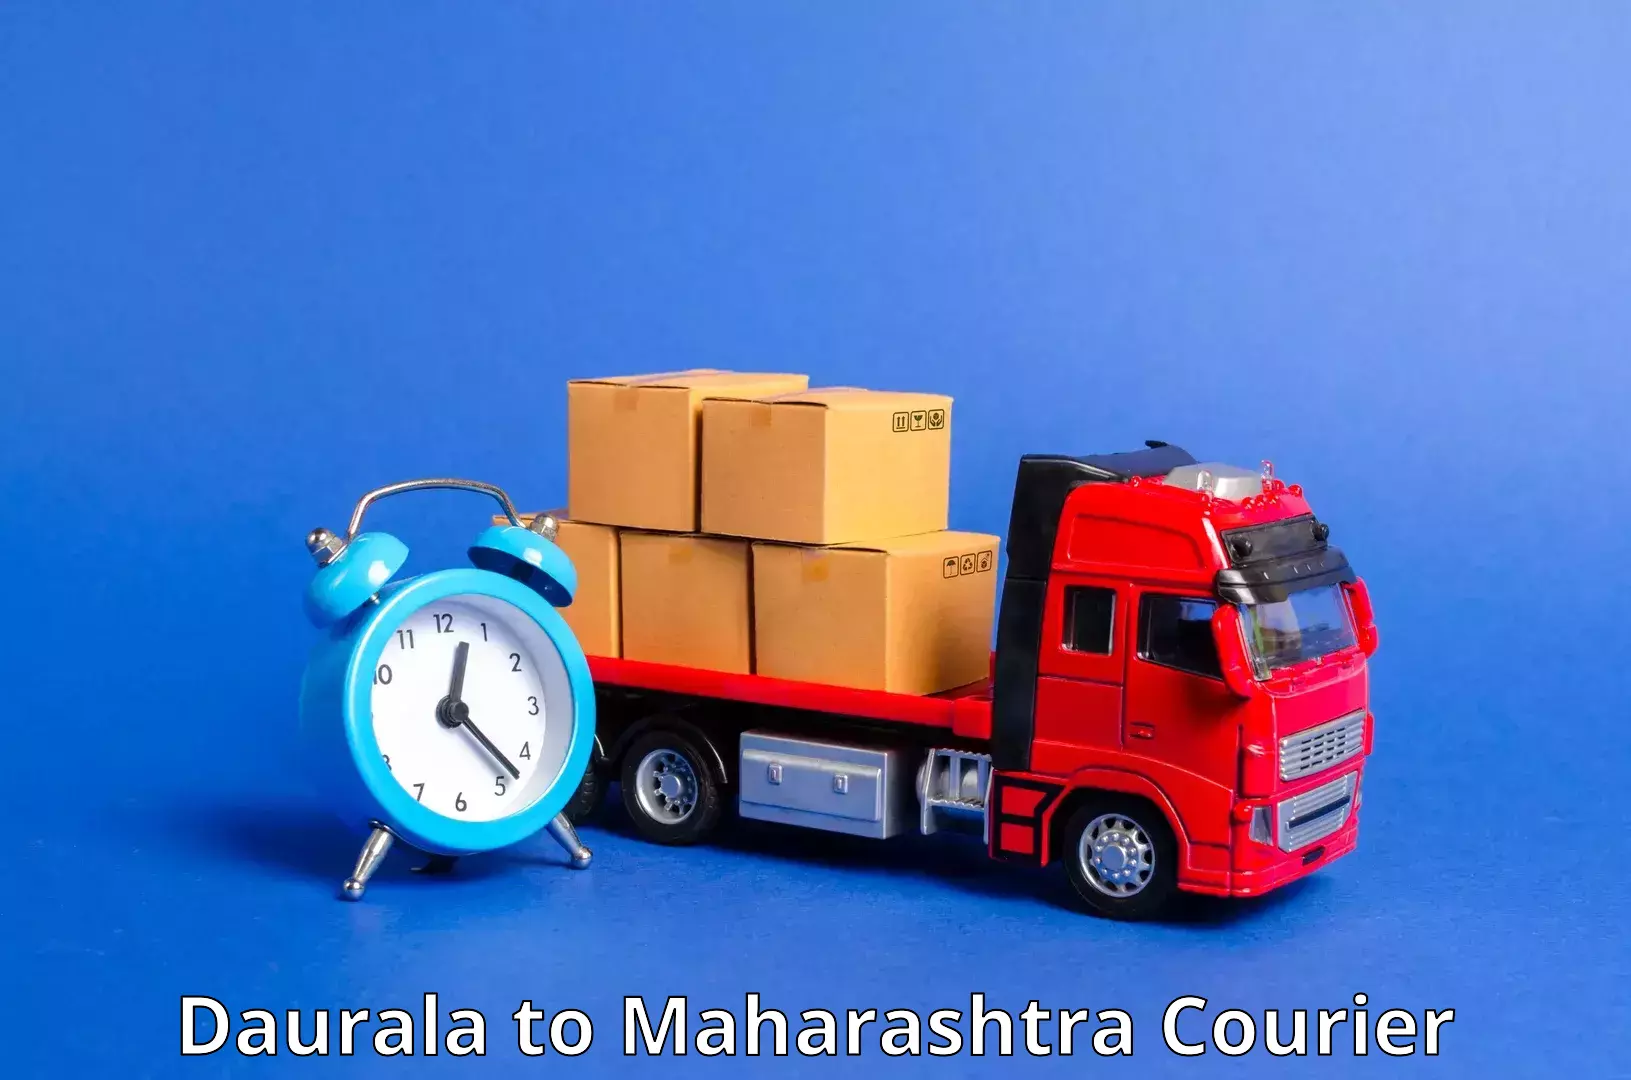 Tech-enabled shipping Daurala to Bhokar